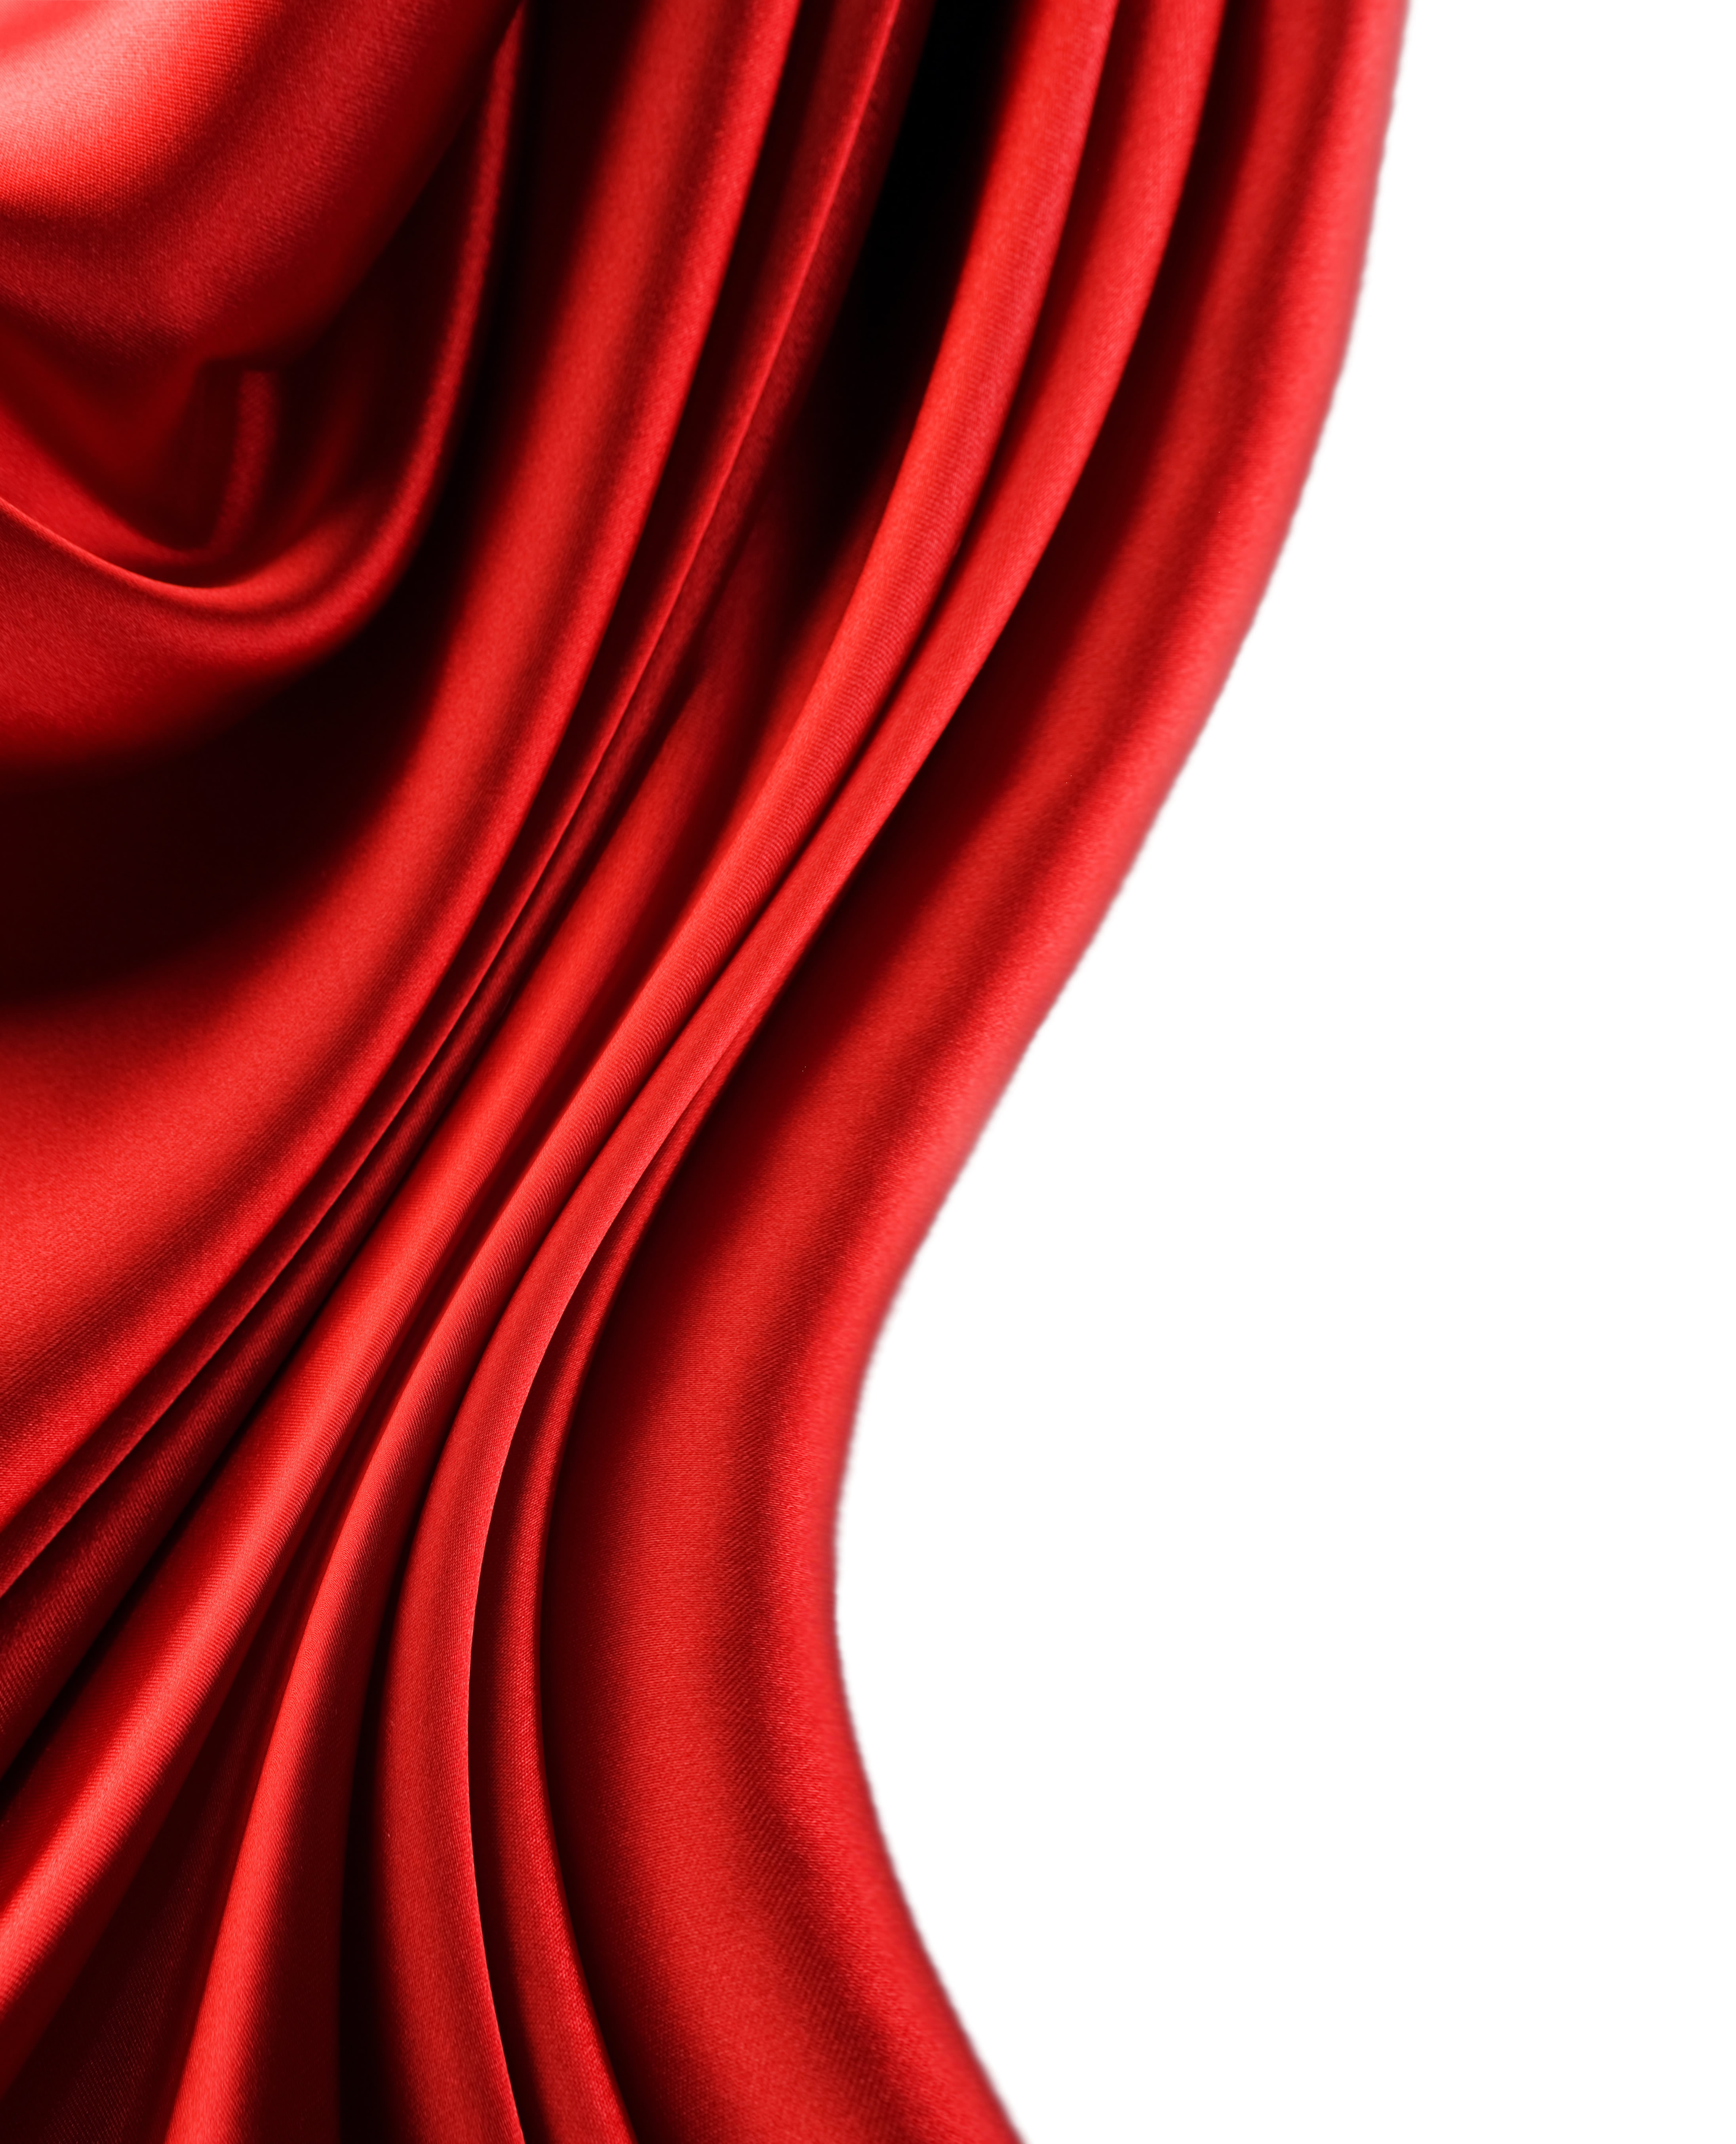 красная ткань на белом фоне, шелк, скачать фото, фон, текстура, red satin texture background